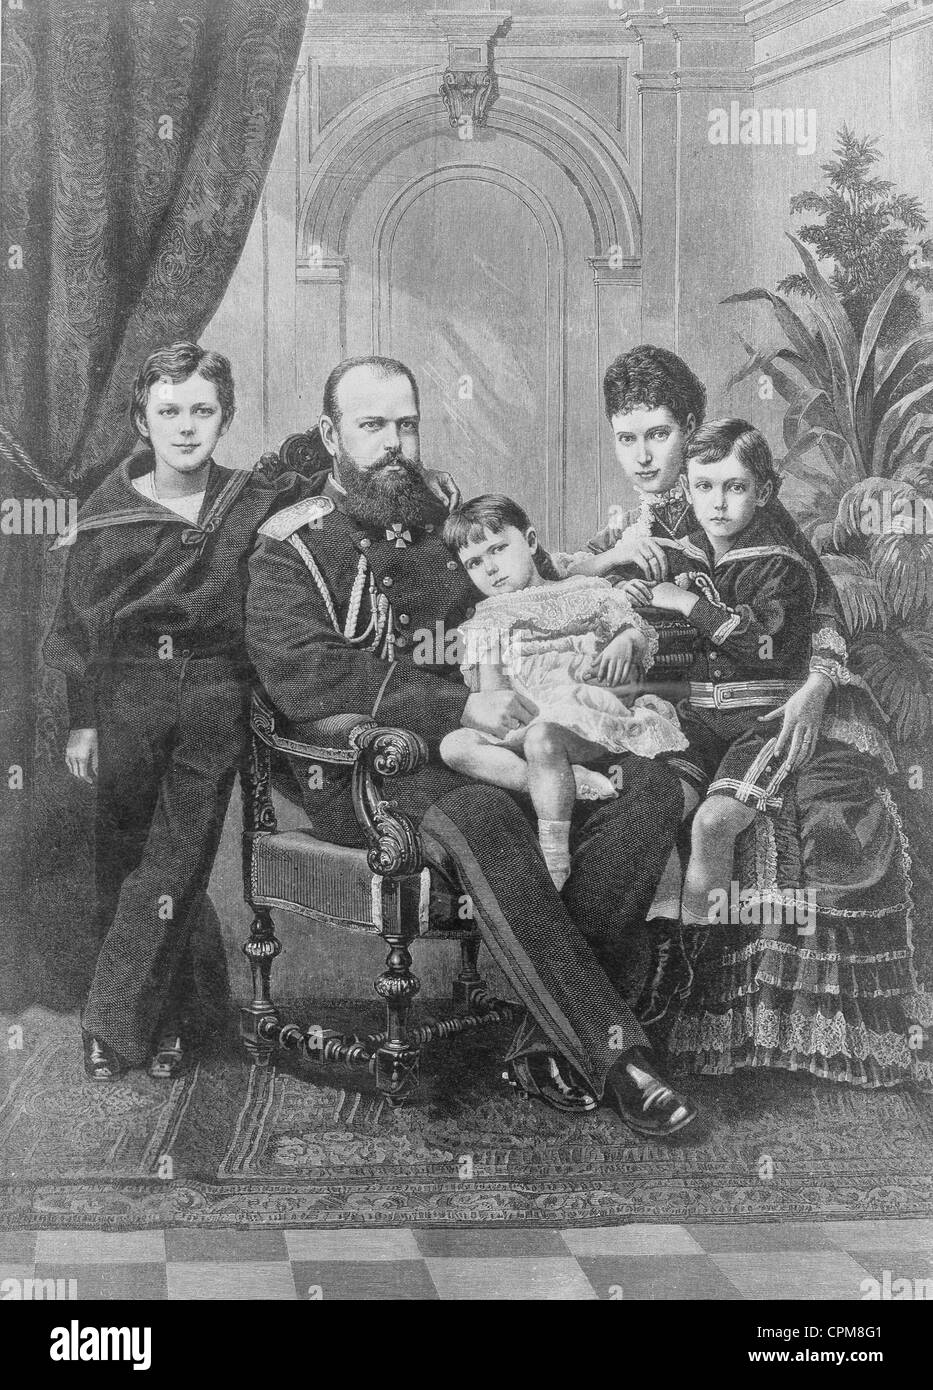 Le tsar Alexandre III de Russie avec sa famille, vers 1880 Banque D'Images